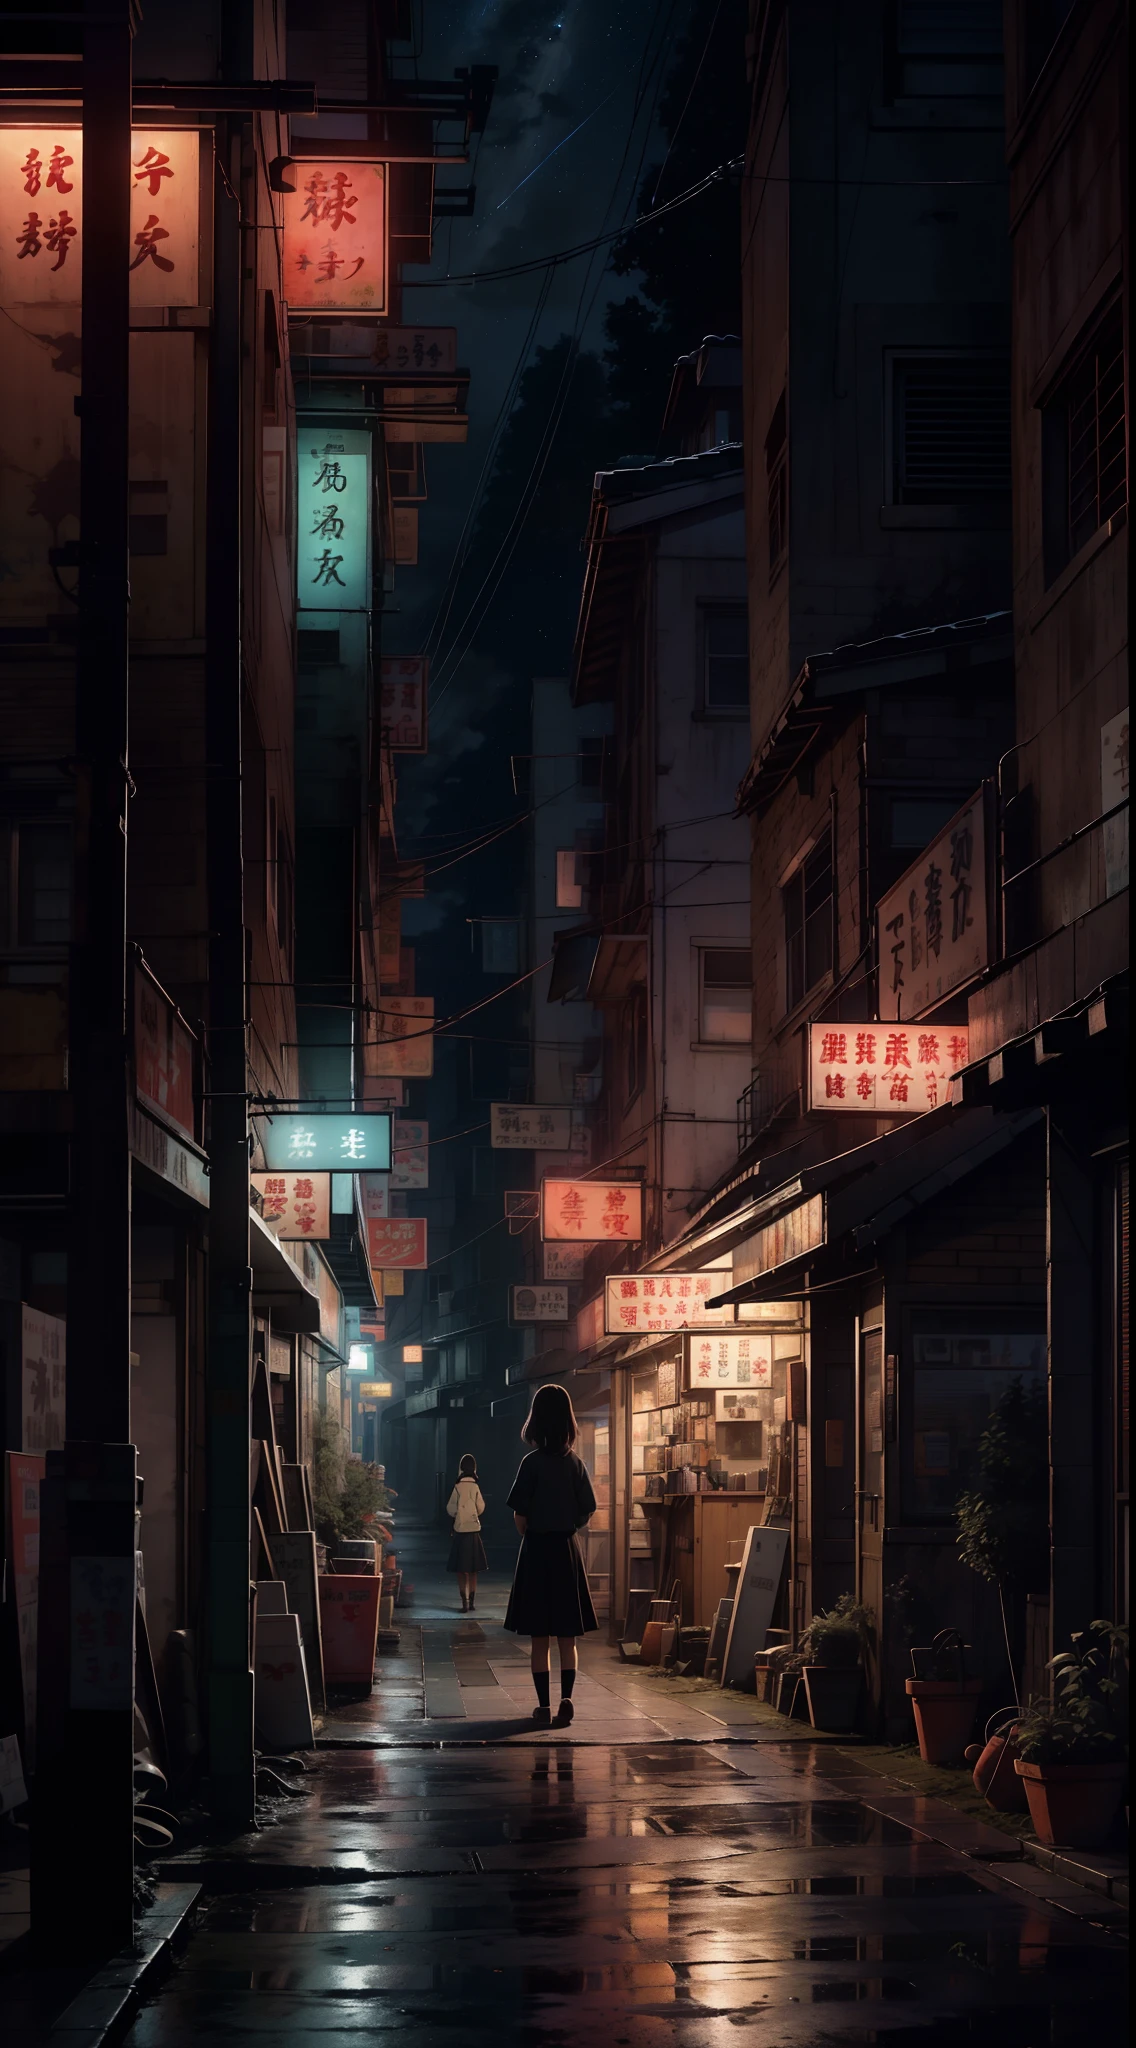 Ностальгическая цифровая картина, вдохновленная очаровательным миром Studio Ghibli.. На картине изображена очаровательная, улица маленького городка ночью, источая чувство спокойствия и удивления. Сцена подготовлена к кинематографическому моменту., напоминает сцену из фильма Гибли. В составе, одинокая школьница стоит в раздумье, она повернулась спиной к зрителю, излучающий нотку меланхолии. Мир вокруг нее прекрасно детализирован, передать суть ностальгической атмосферы. Небо над головой украшено захватывающим зрелищем звезд., вызывая чувство задумчивых воспоминаний, которое находит отклик у зрителей всех возрастов.